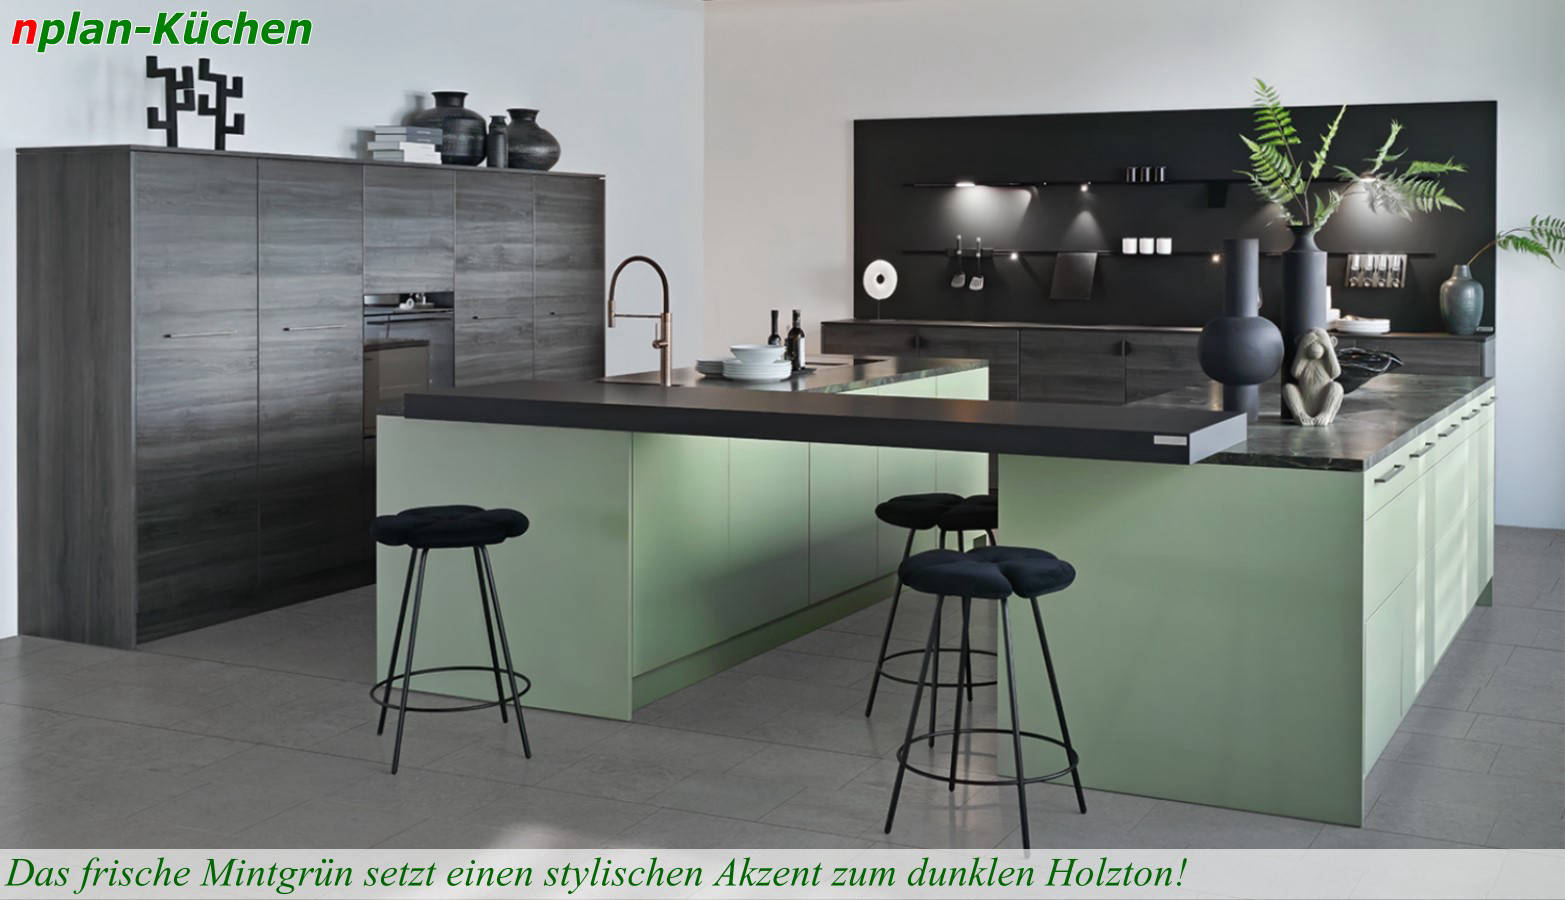 Küchenlinie Brillana - Große offene Inselküche in Frischem Mintgrün, kombiniert mit grauem Holz